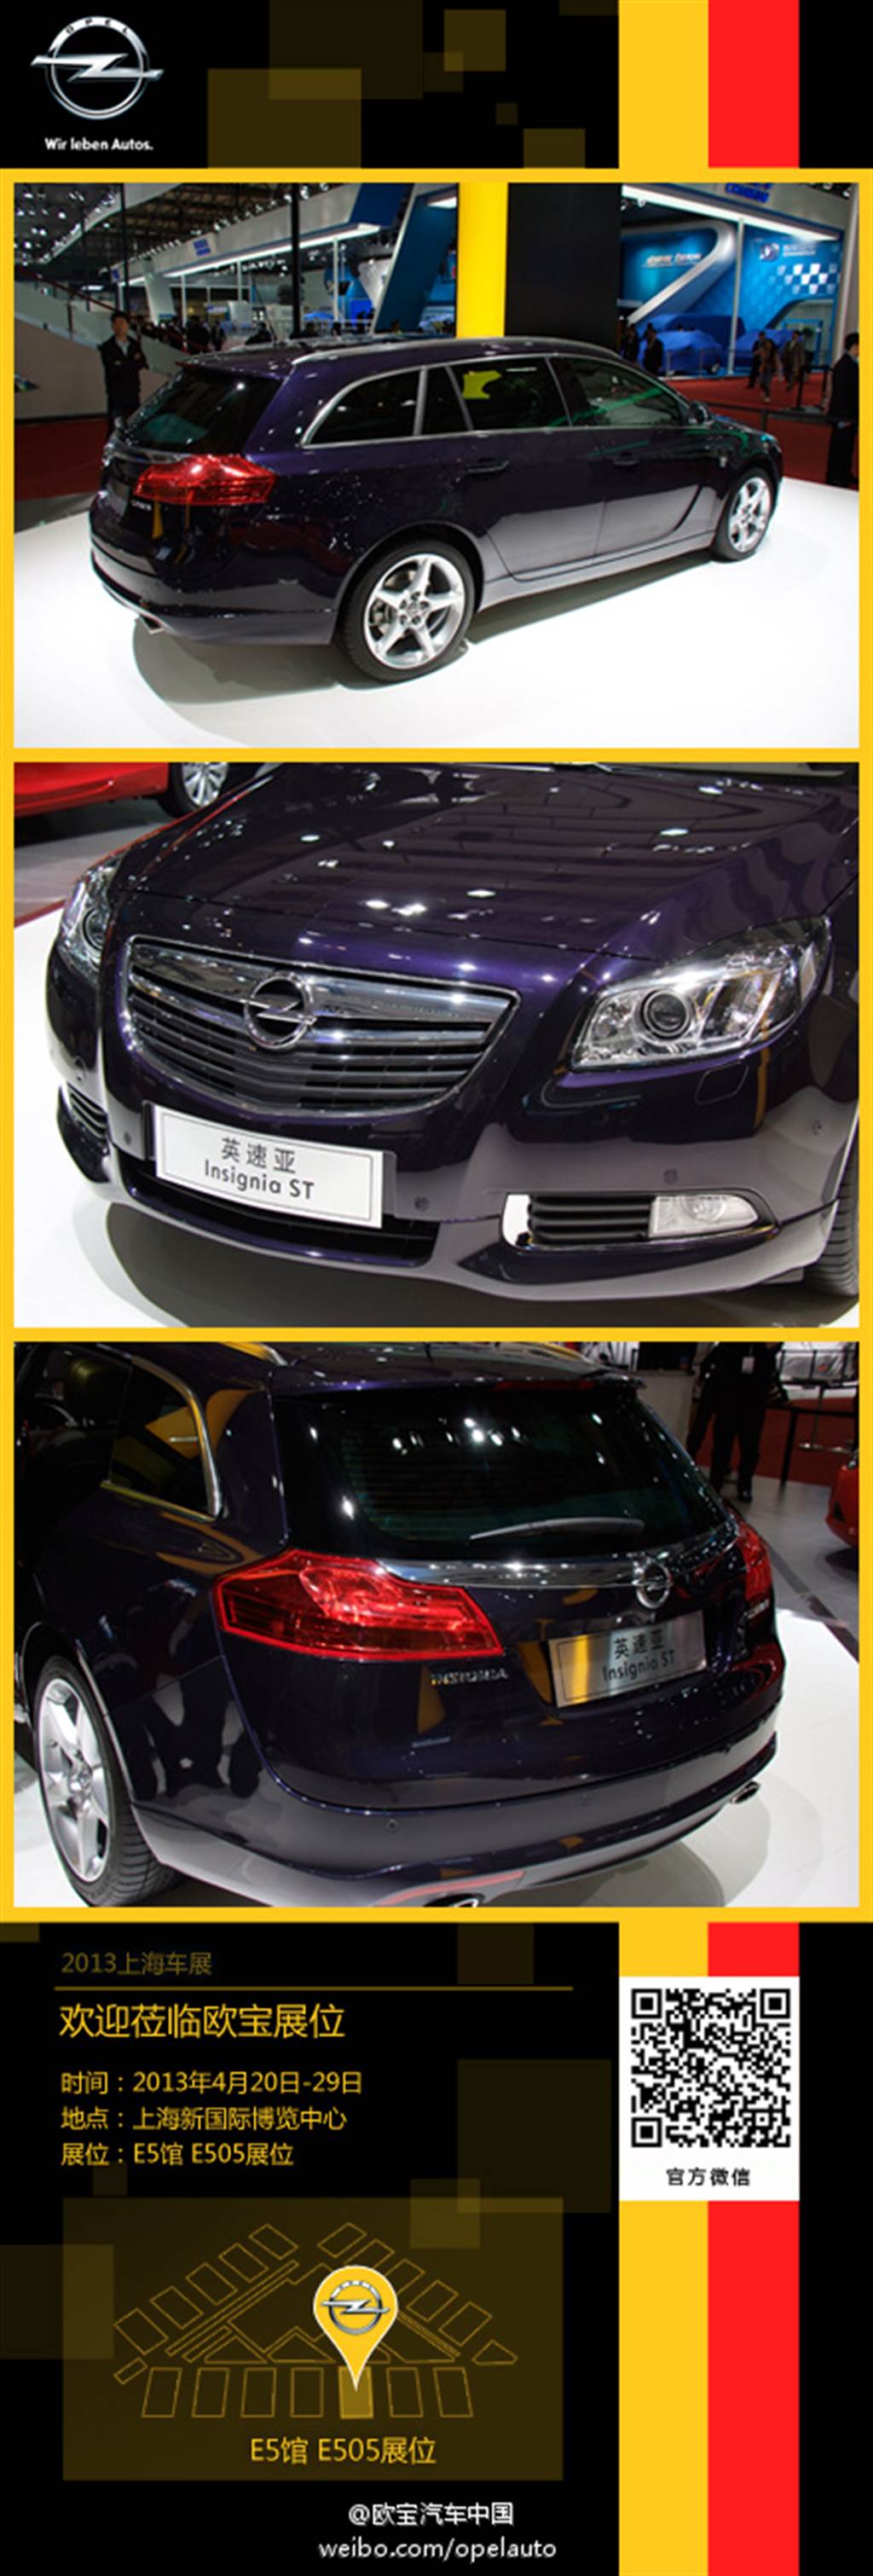 Opel 全面電動化時程確定、同時將重返中國大陸市場！
